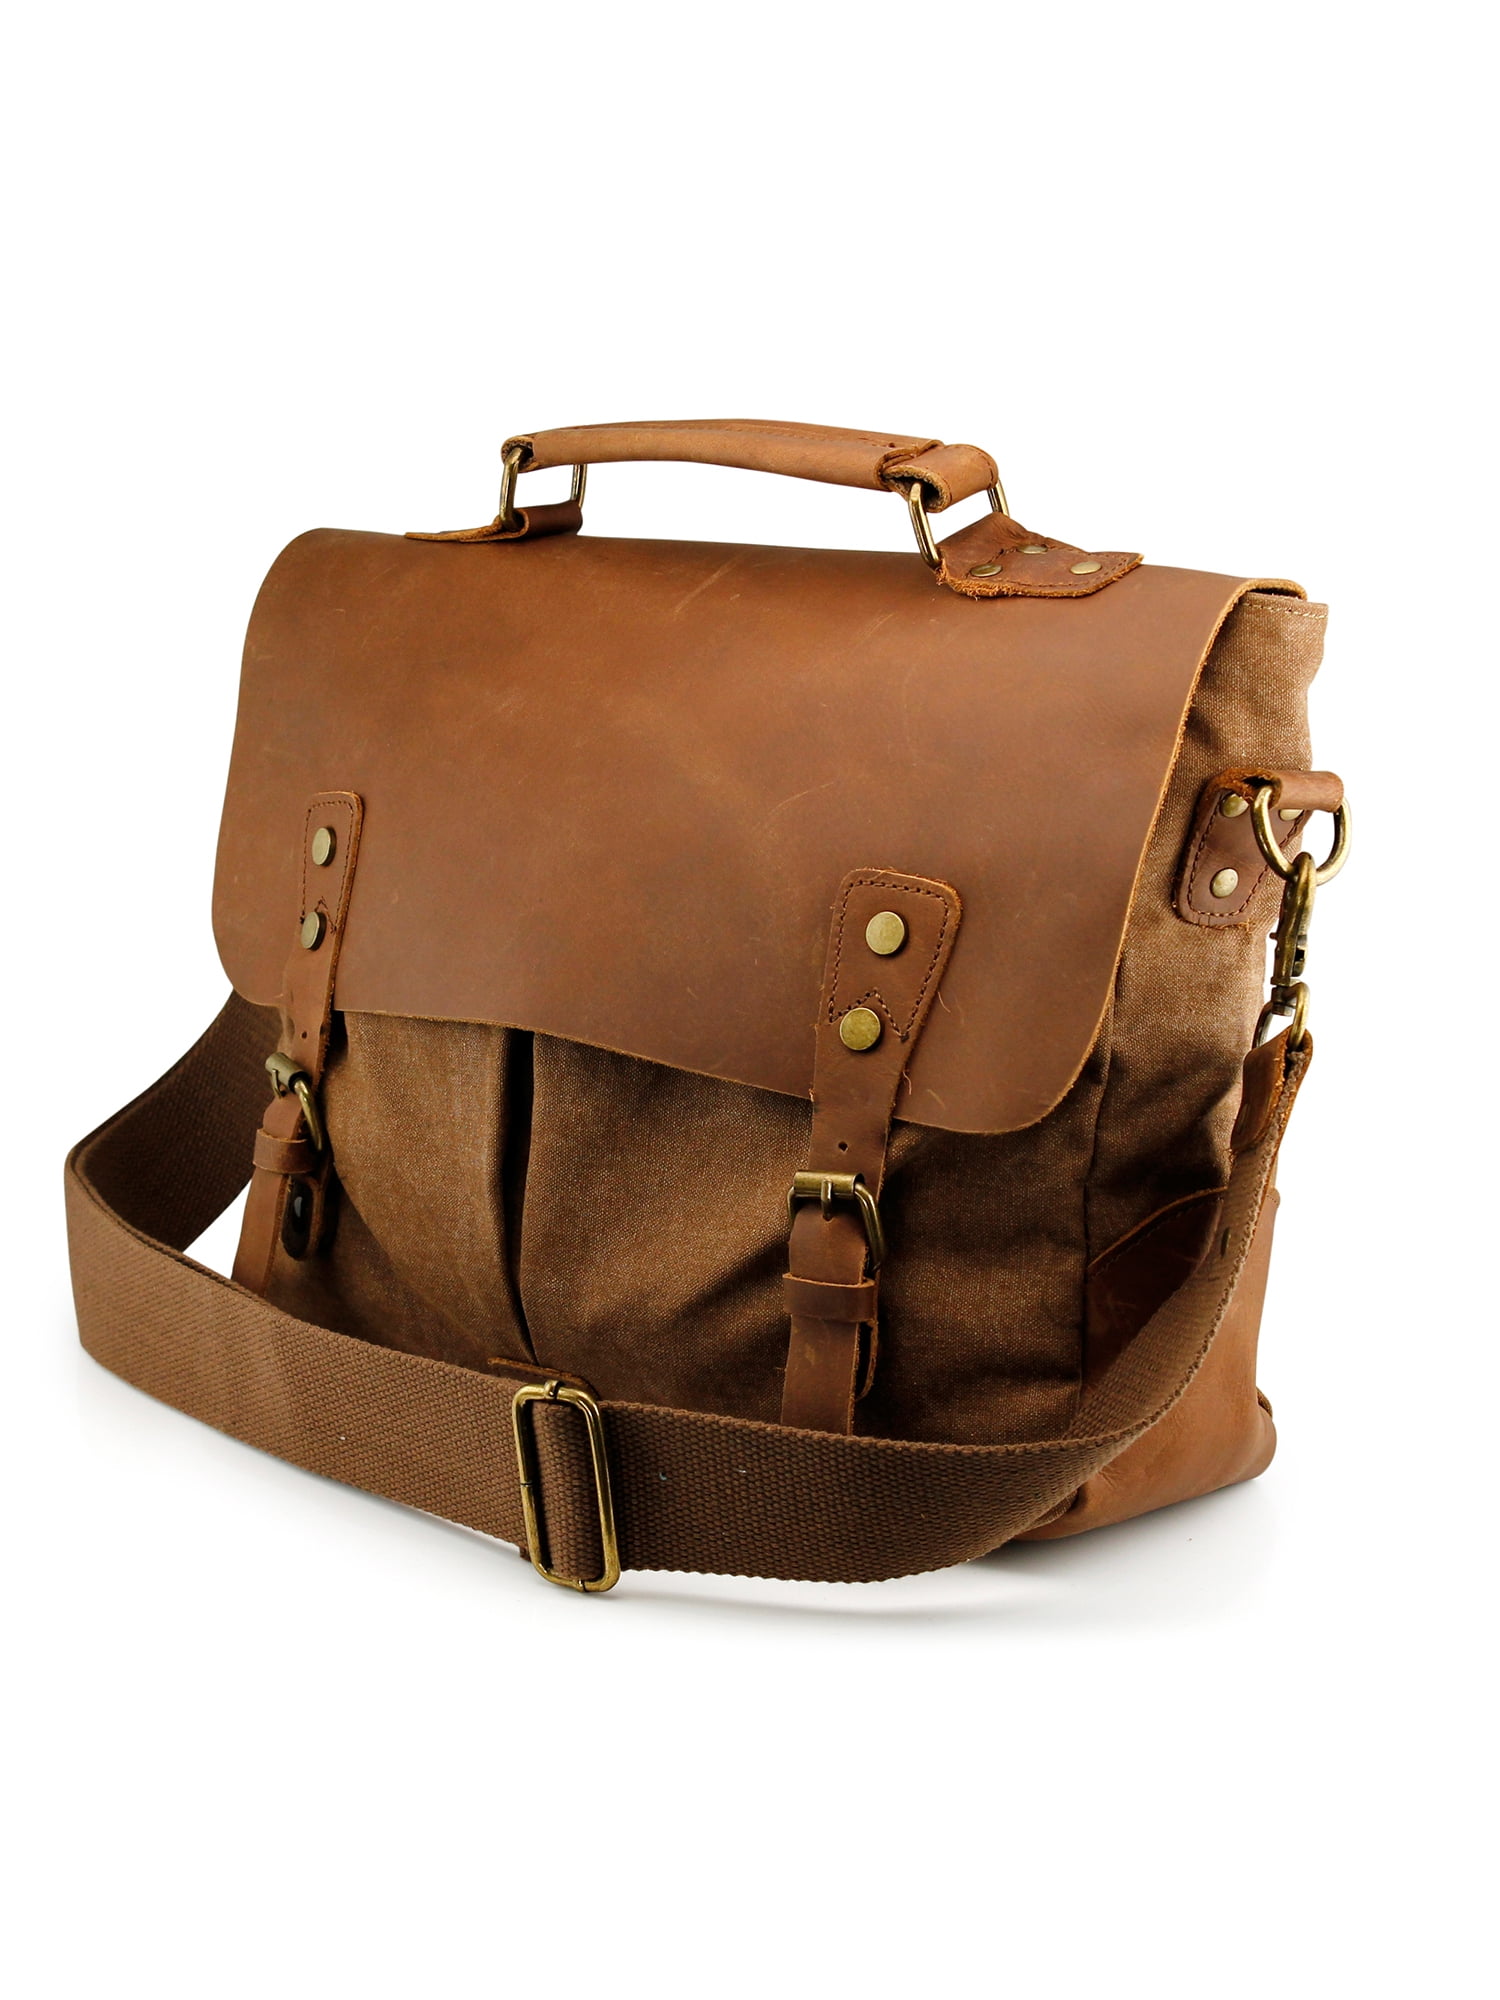 Men's Vintage Canvas Handbag Messenger Shoulder Bag travel Camping Bag Satchel. 